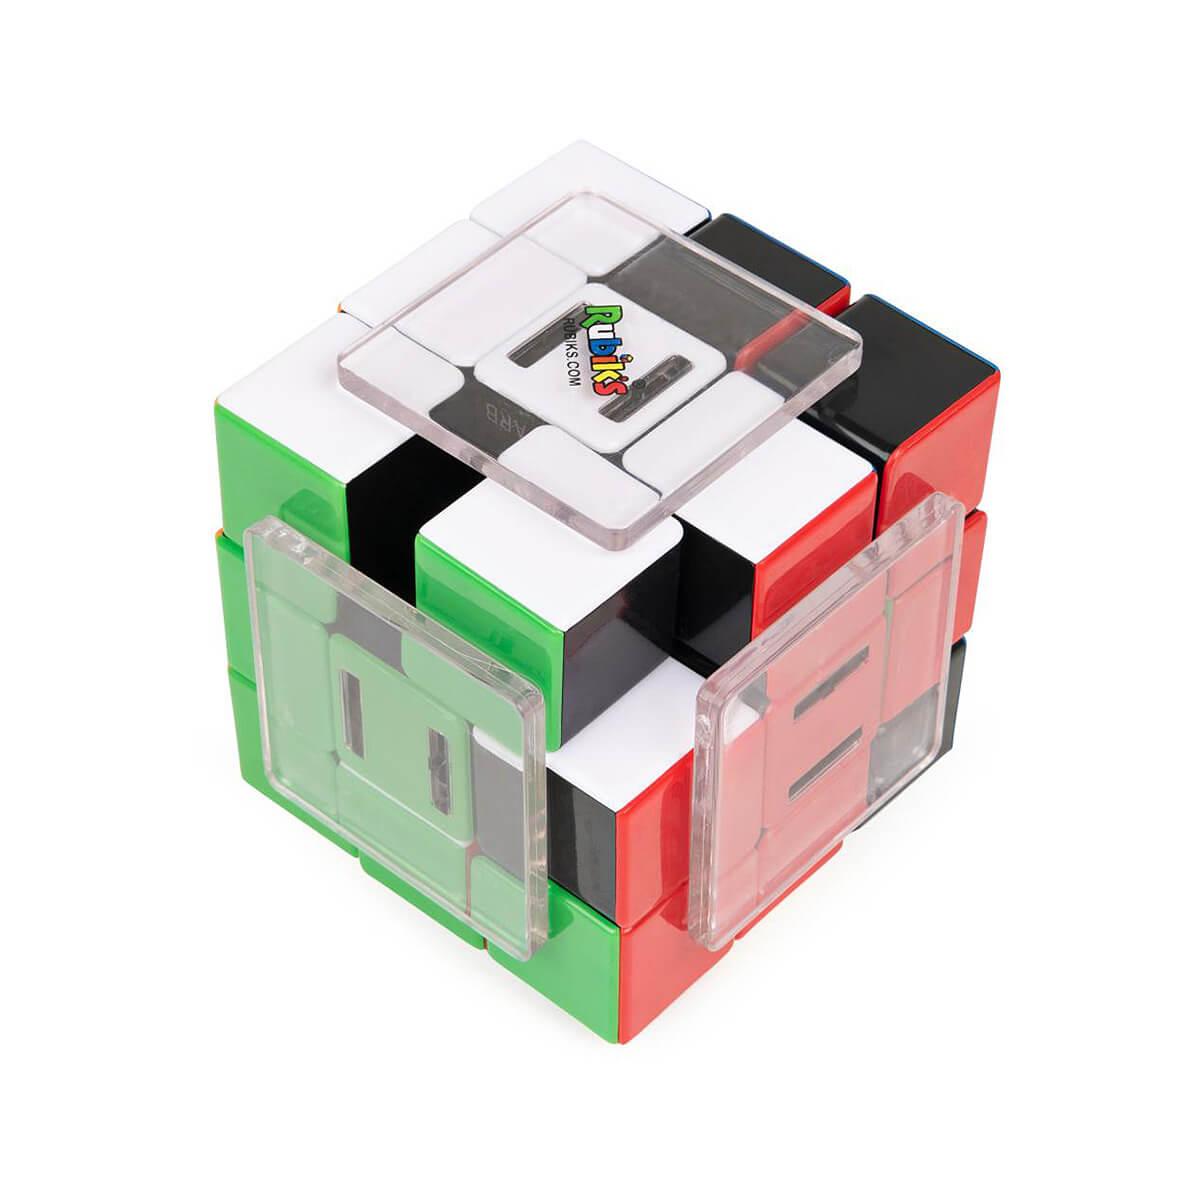  Rubik's Slide Cube Game